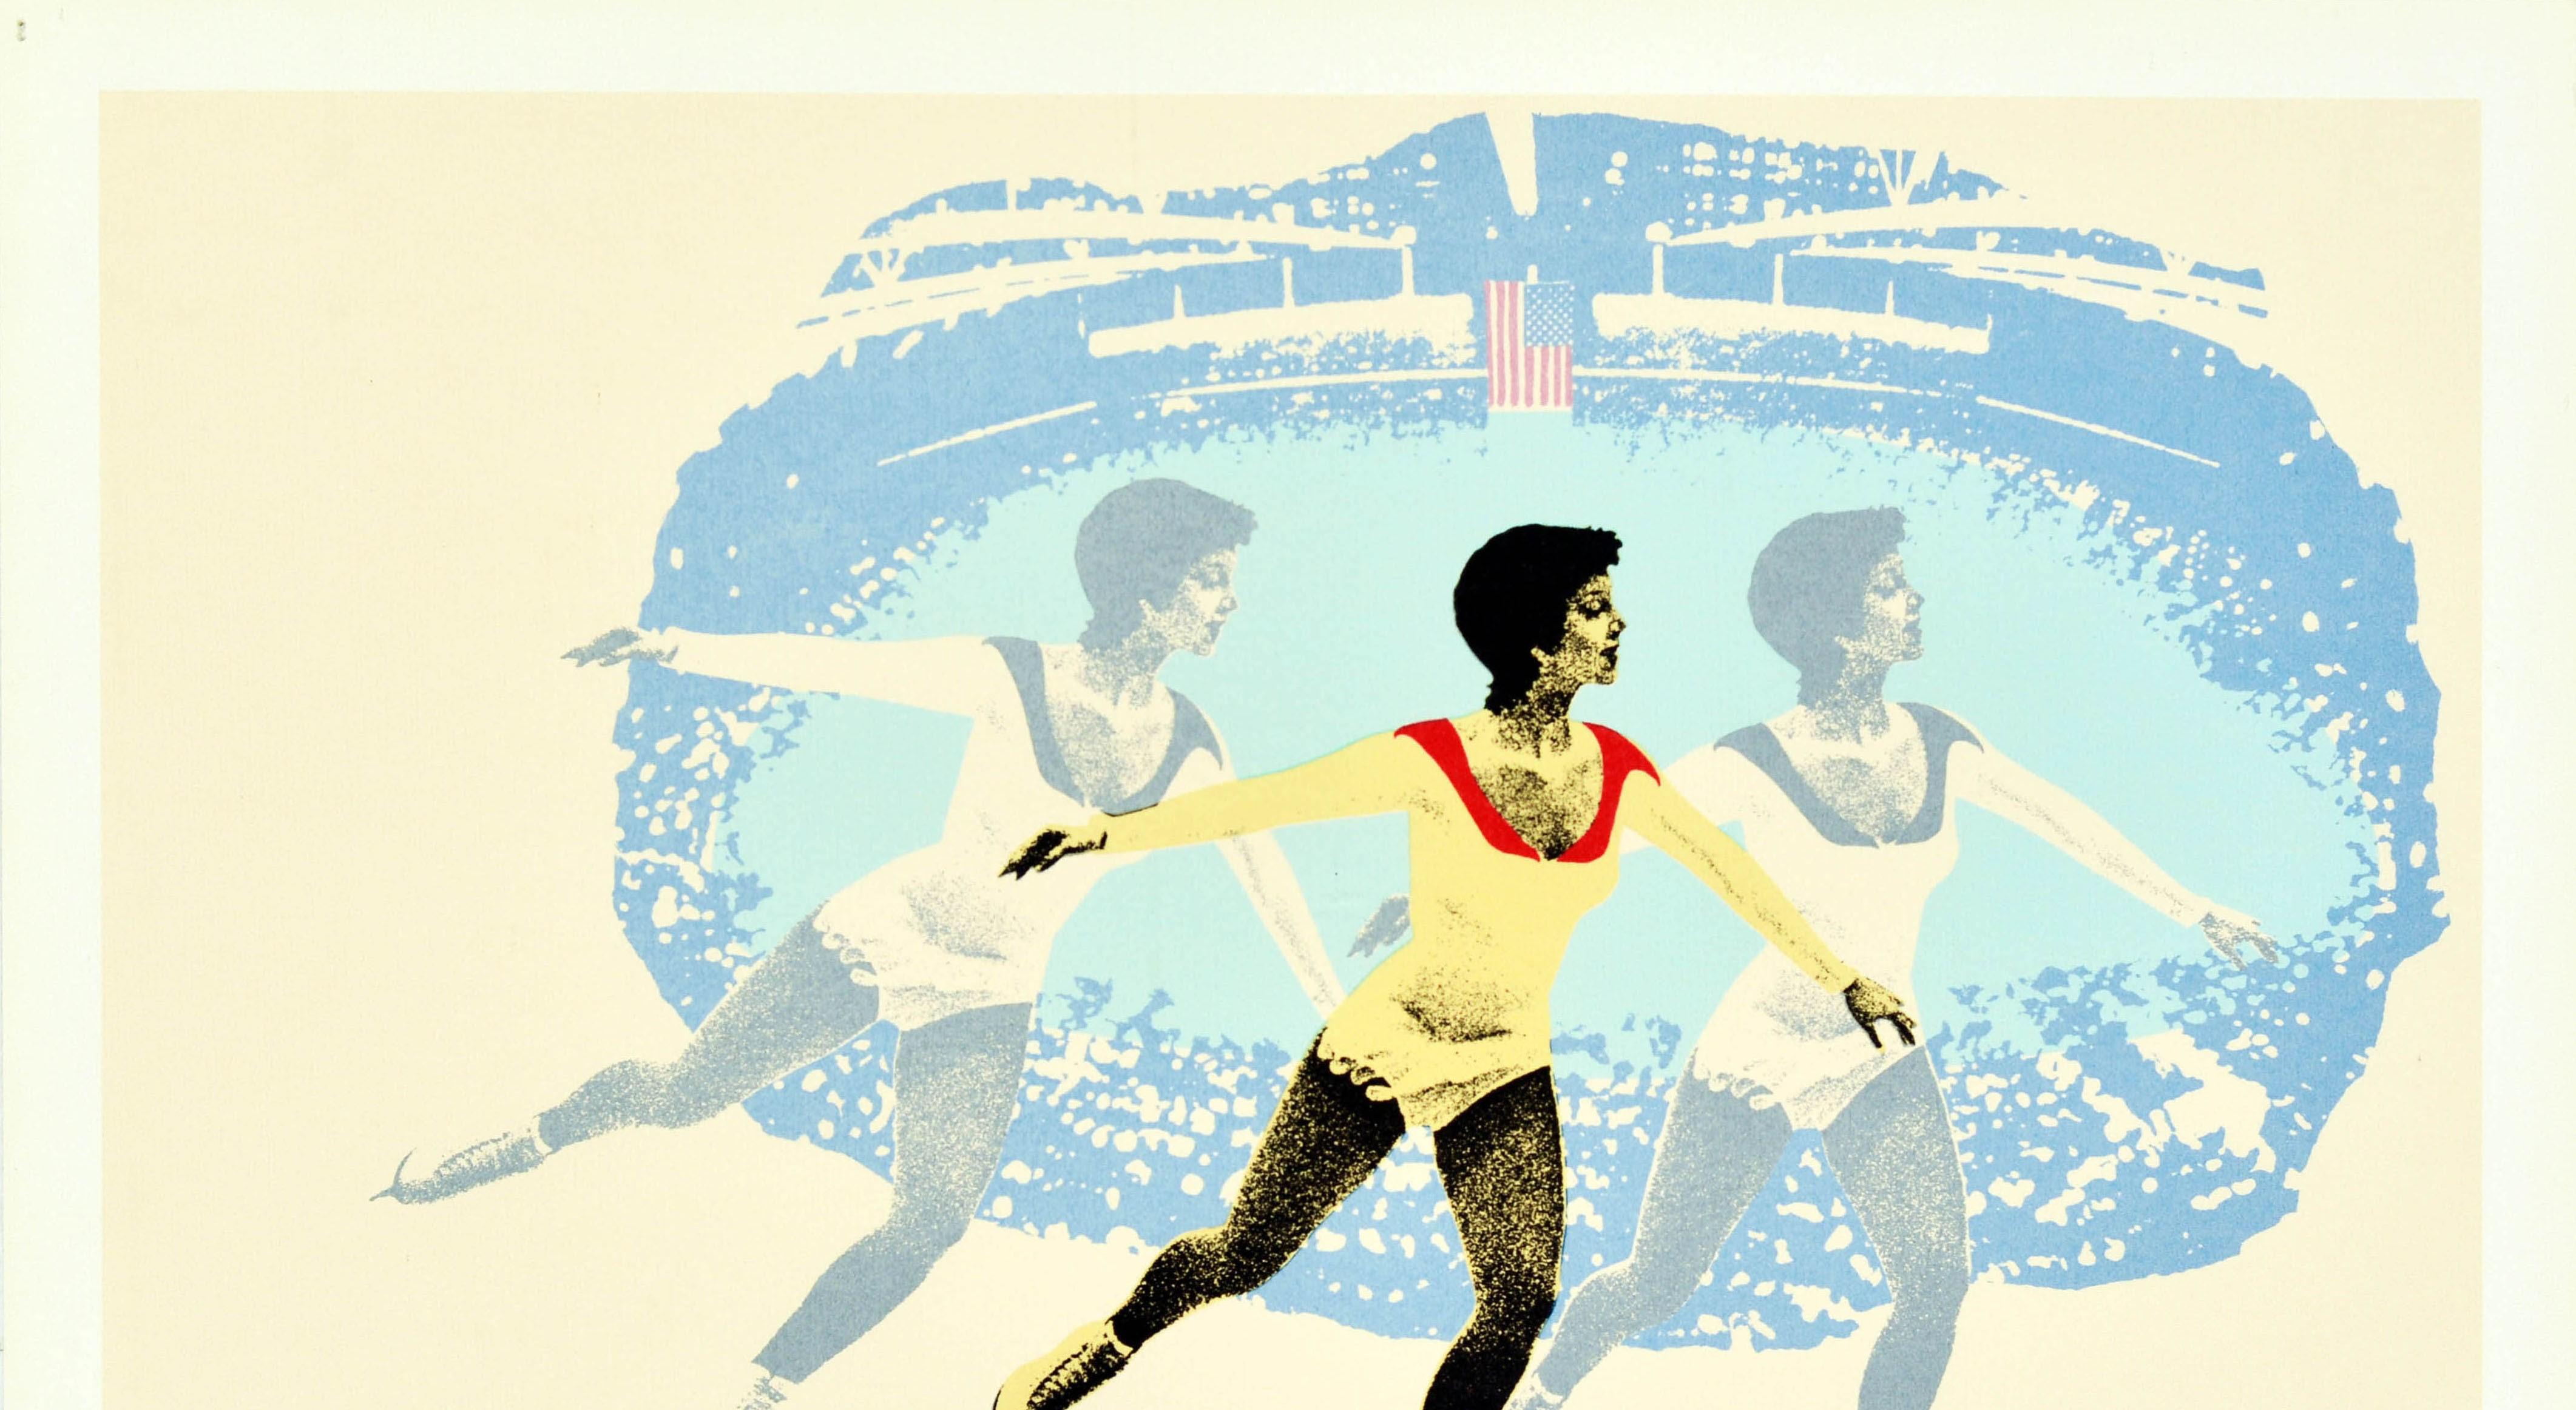 Original-Sportplakat für die XIII. Olympischen Winterspiele Lake Placid 1980, die vom 13. bis 24. Februar in New York (USA) stattfanden. Es zeigt eine Illustration eines Eiskunstläufers vor einer Eisbahn und die amerikanische Flagge mit dem Text